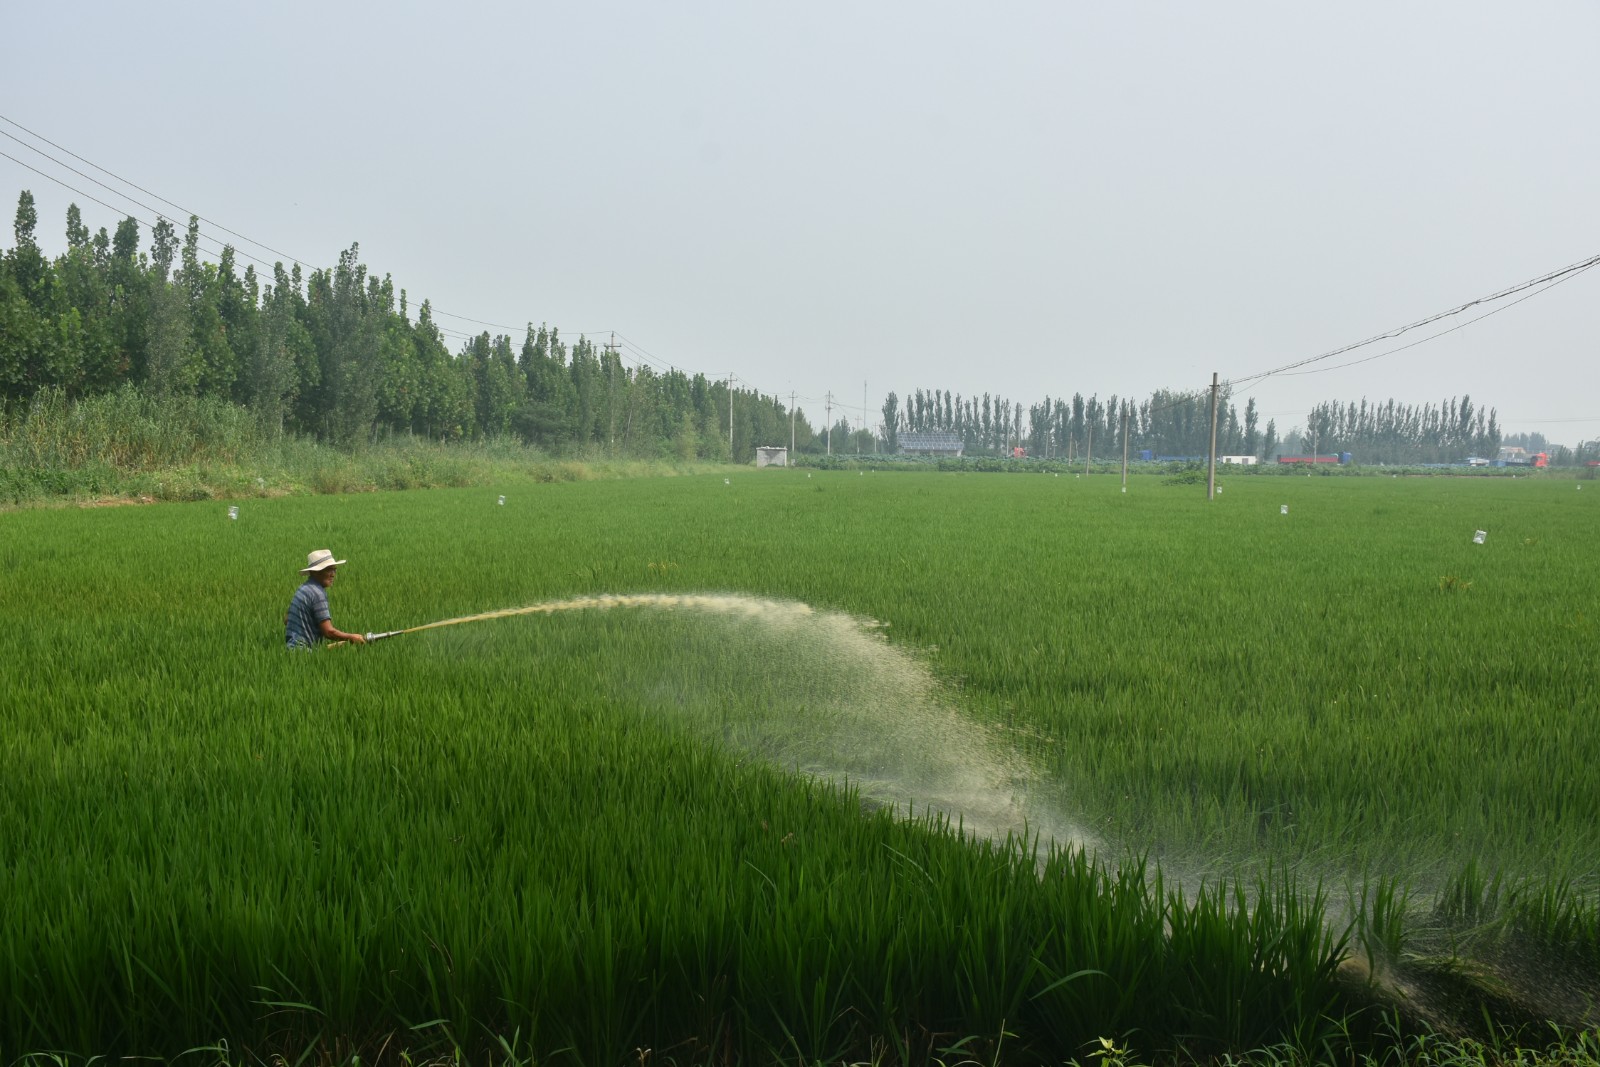 水稻灌浆期图片